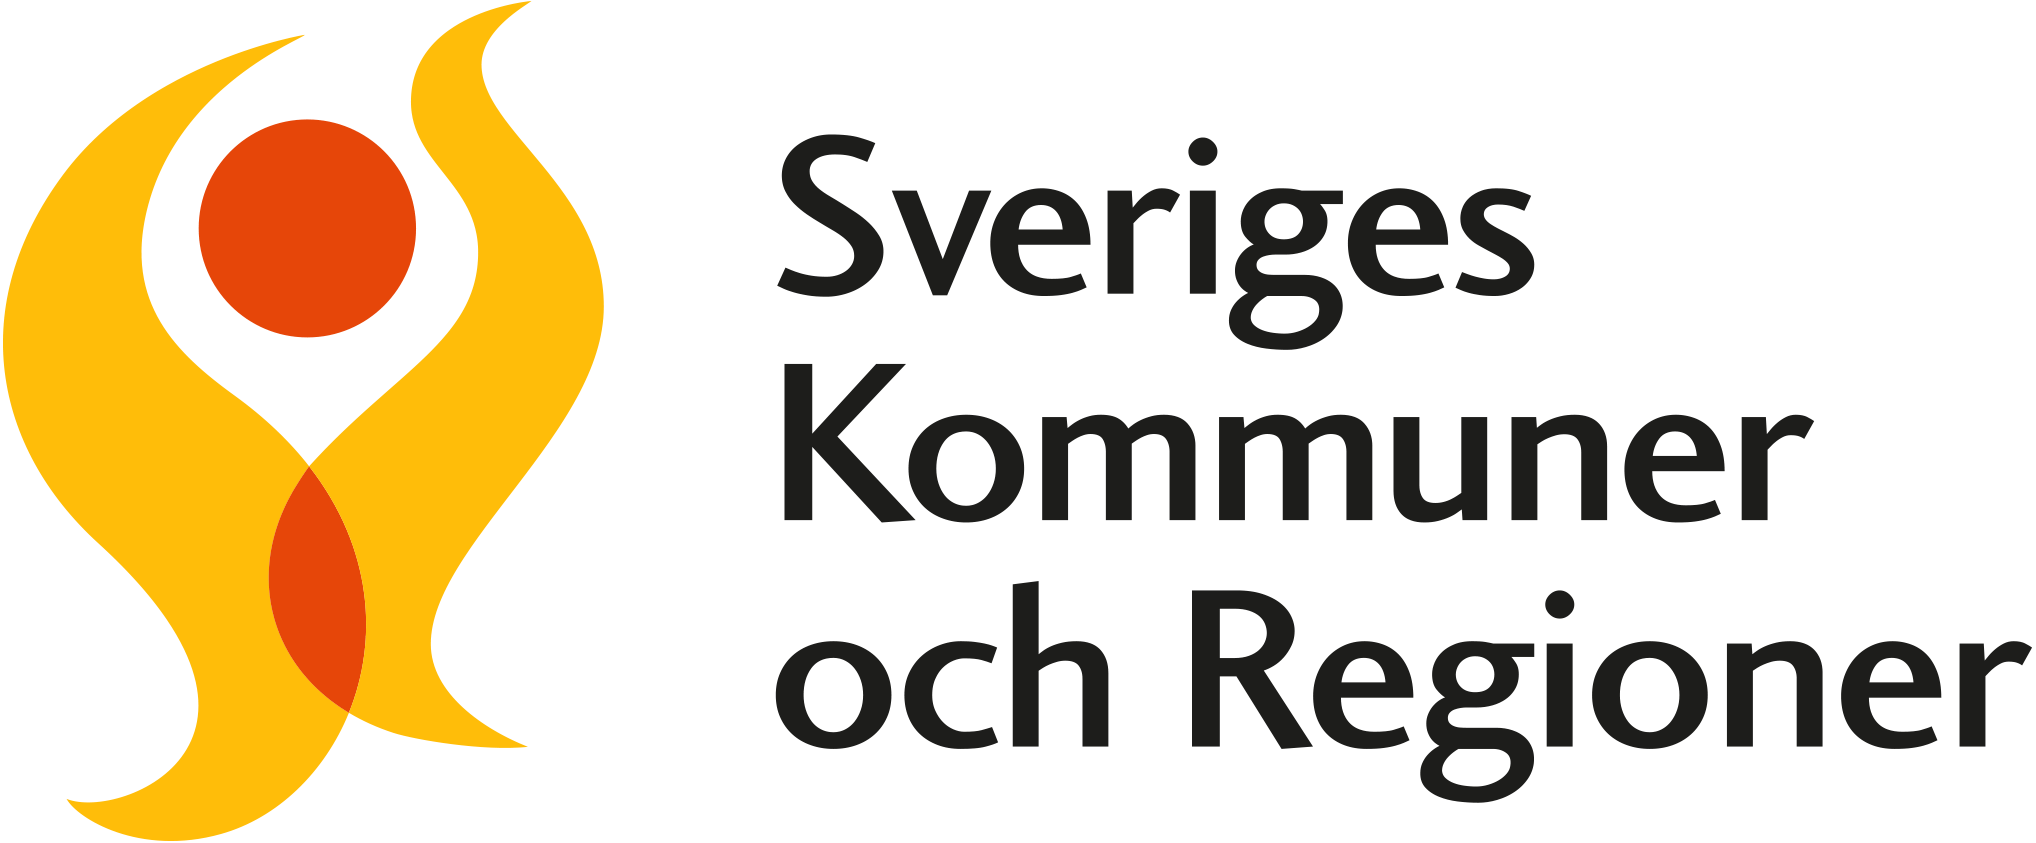 Logga Sveriges kommuner och regioner.